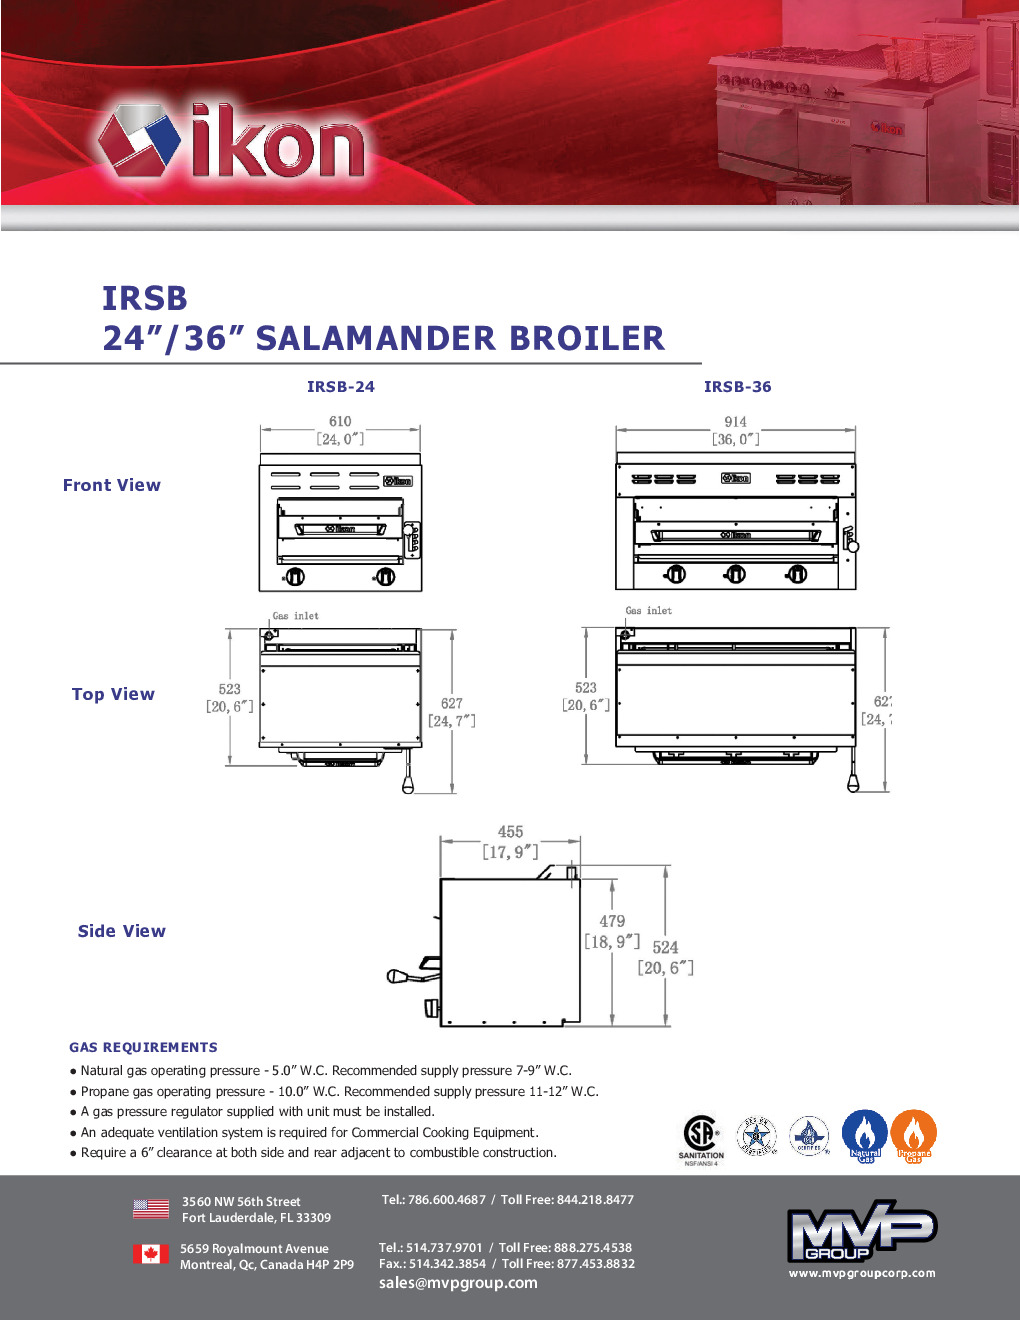 IKON IRSB-36 Gas Salamander Broiler